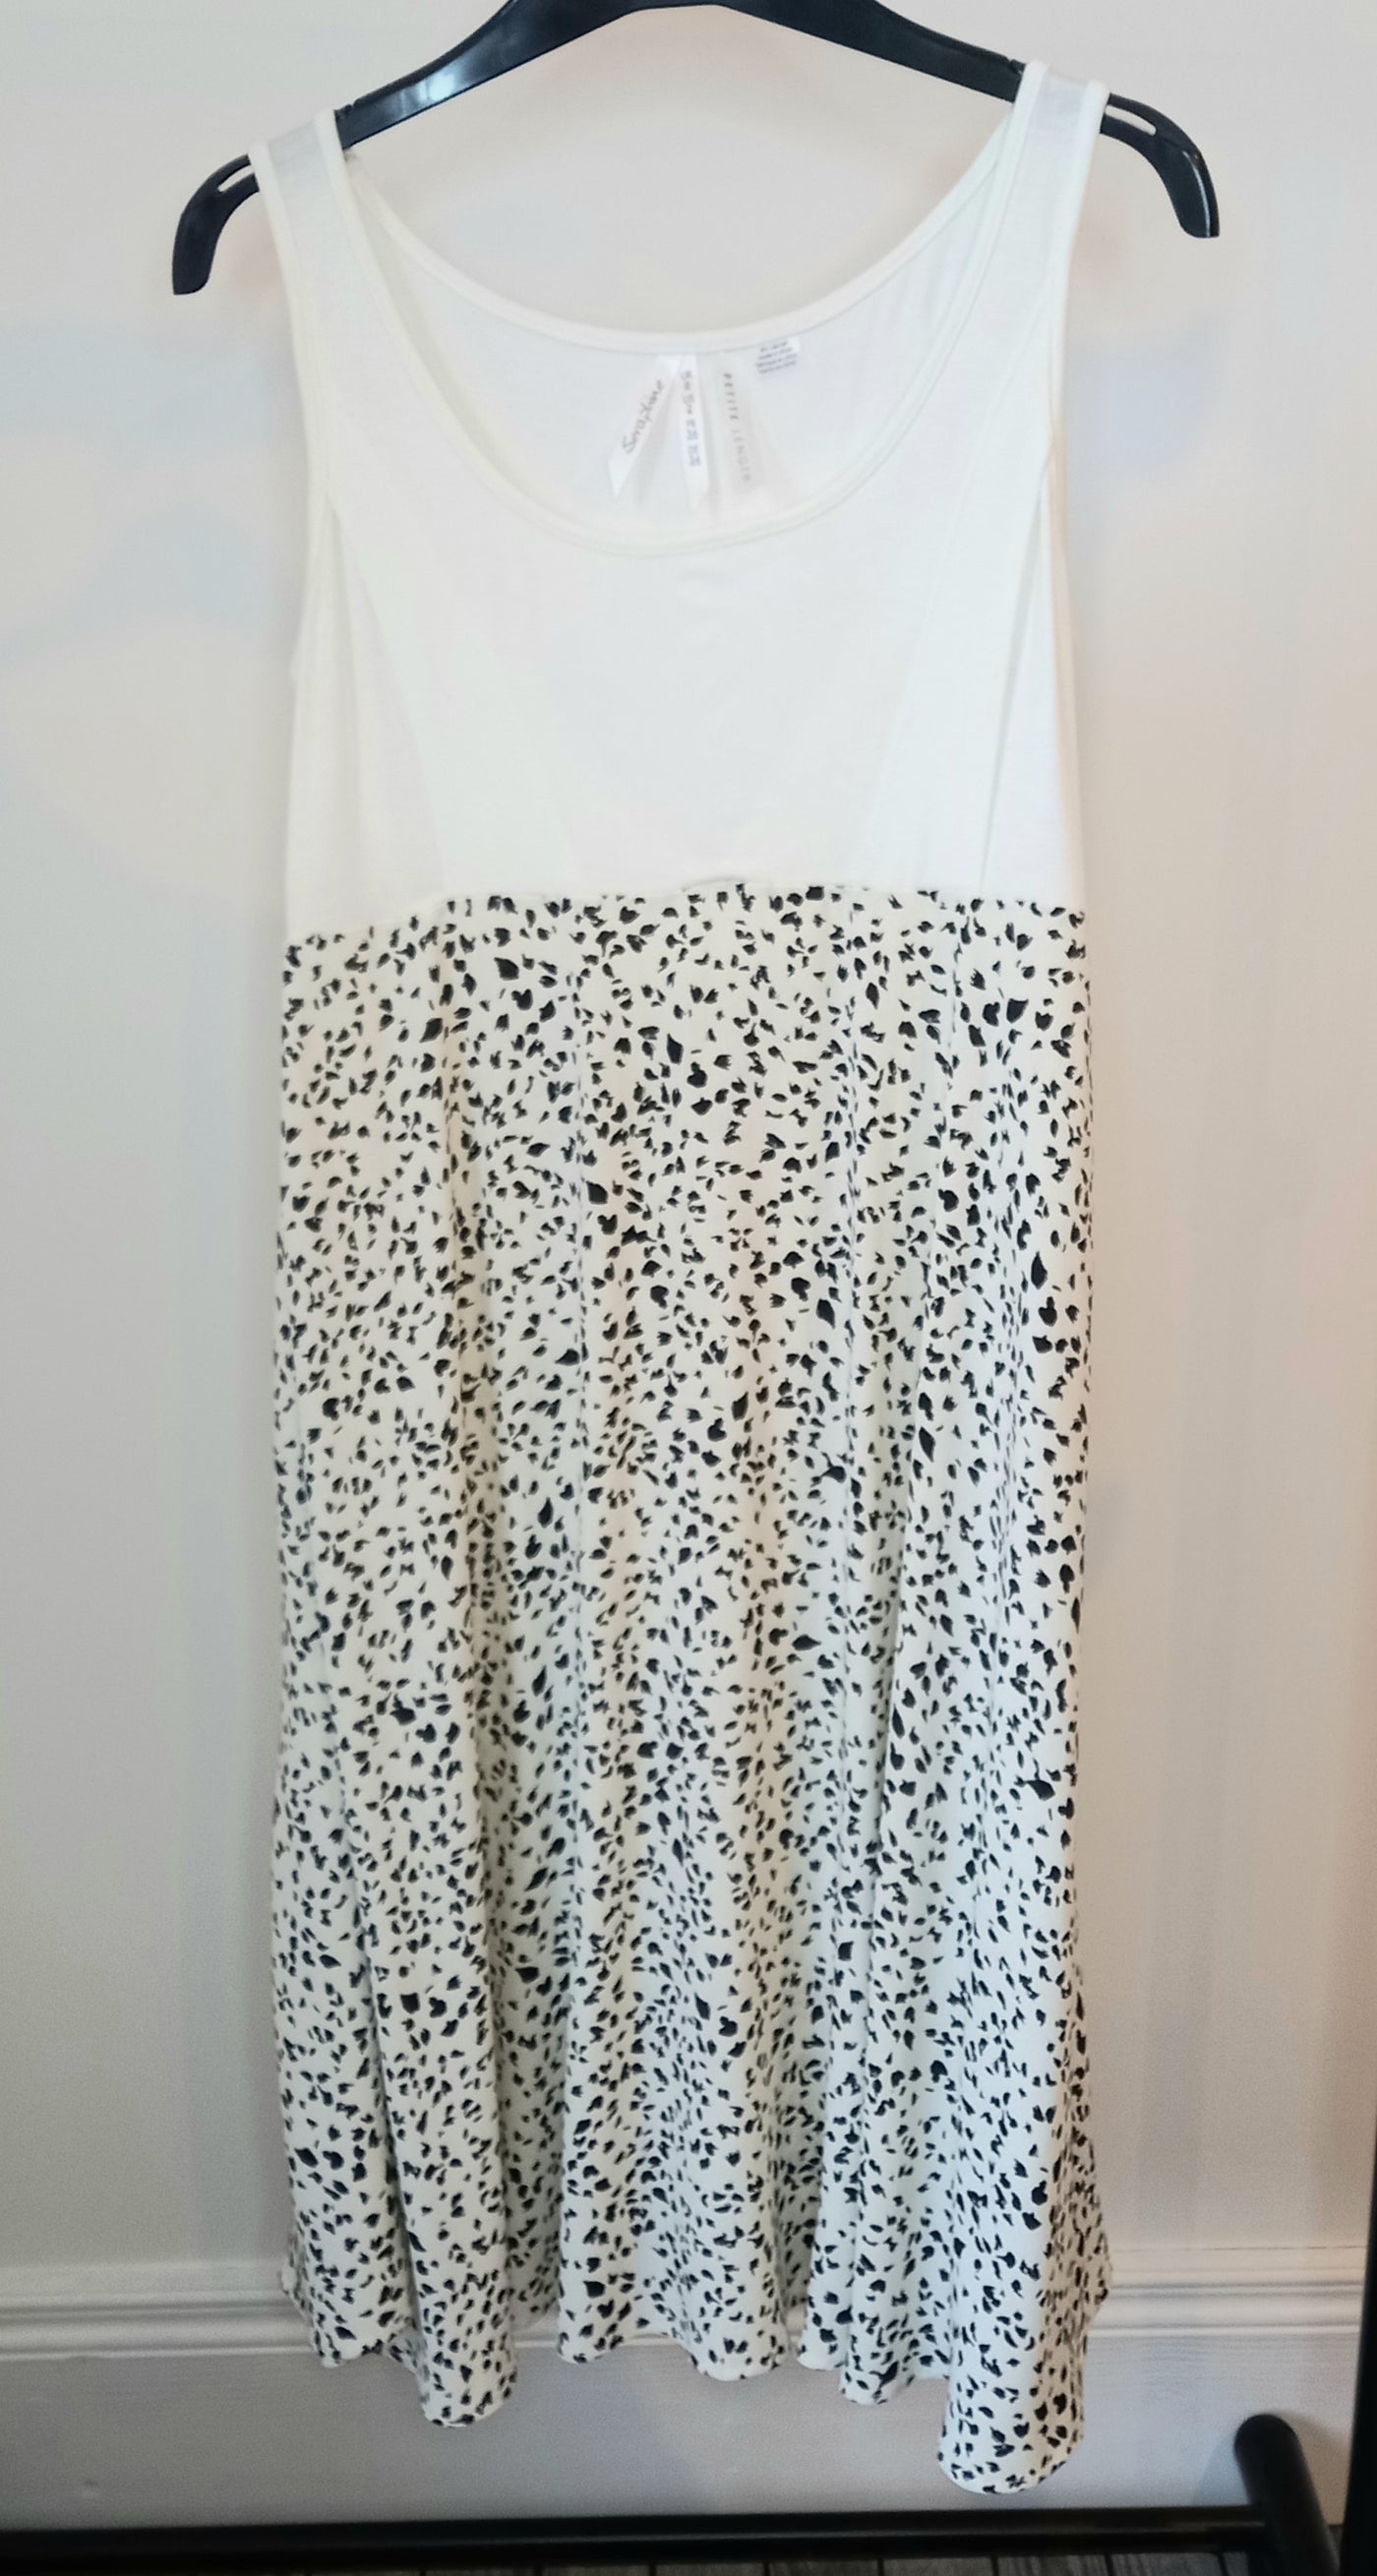 Seraphine Cream & Black Speckled Nursing Dress - Size 6